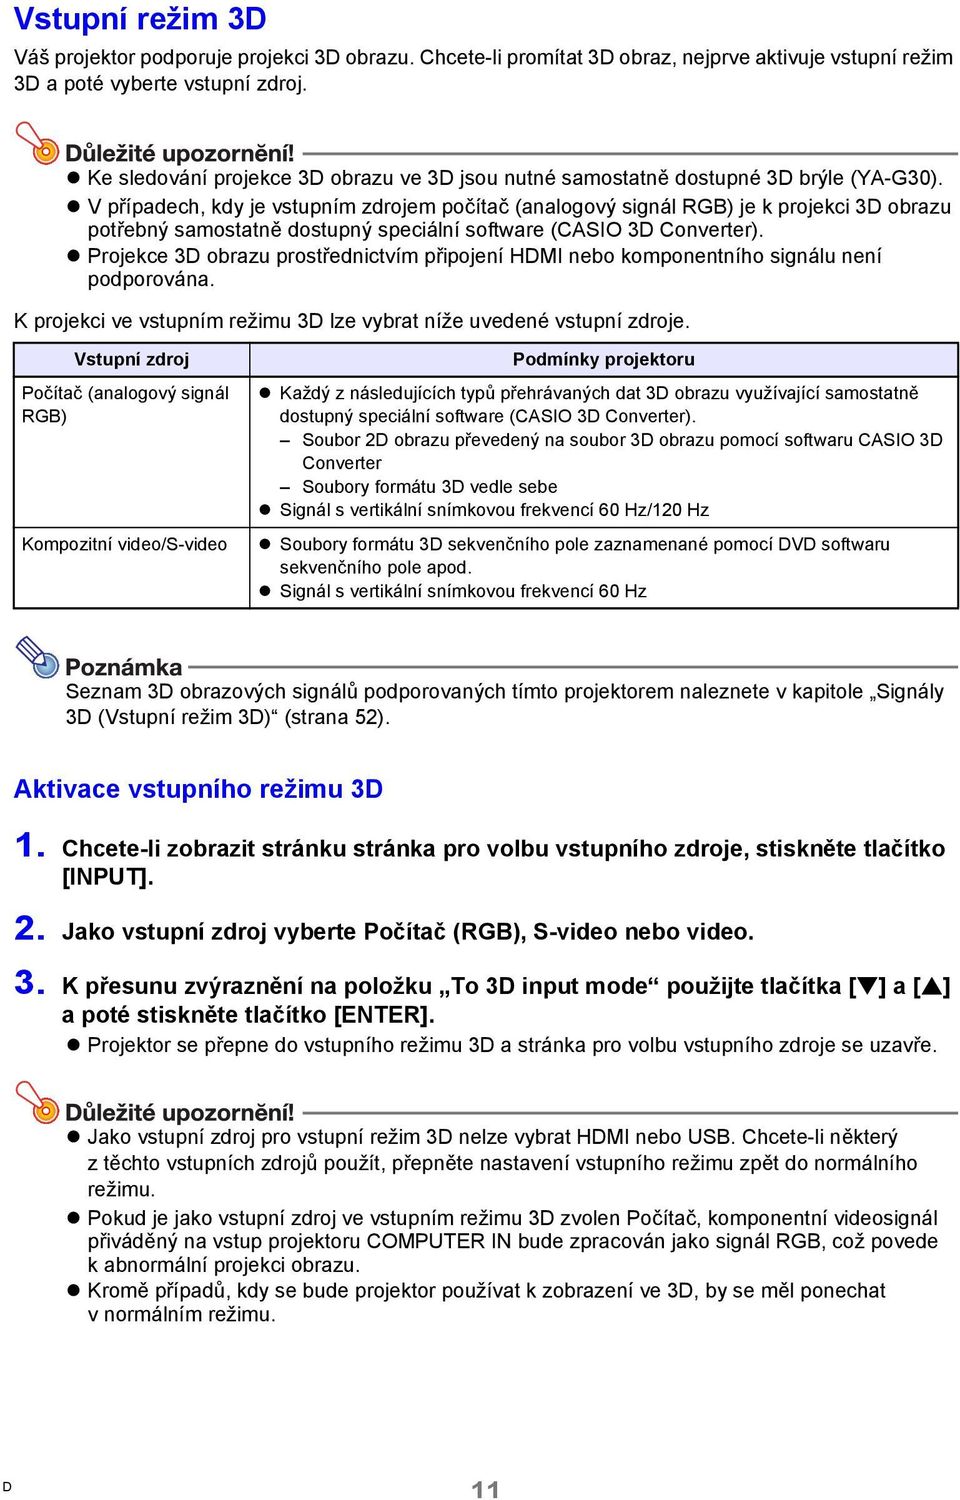 V případech, kdy je vstupním zdrojem počítač (analogový signál RGB) je k projekci 3 obrazu potřebný samostatně dostupný speciální software (CASIO 3 Converter).